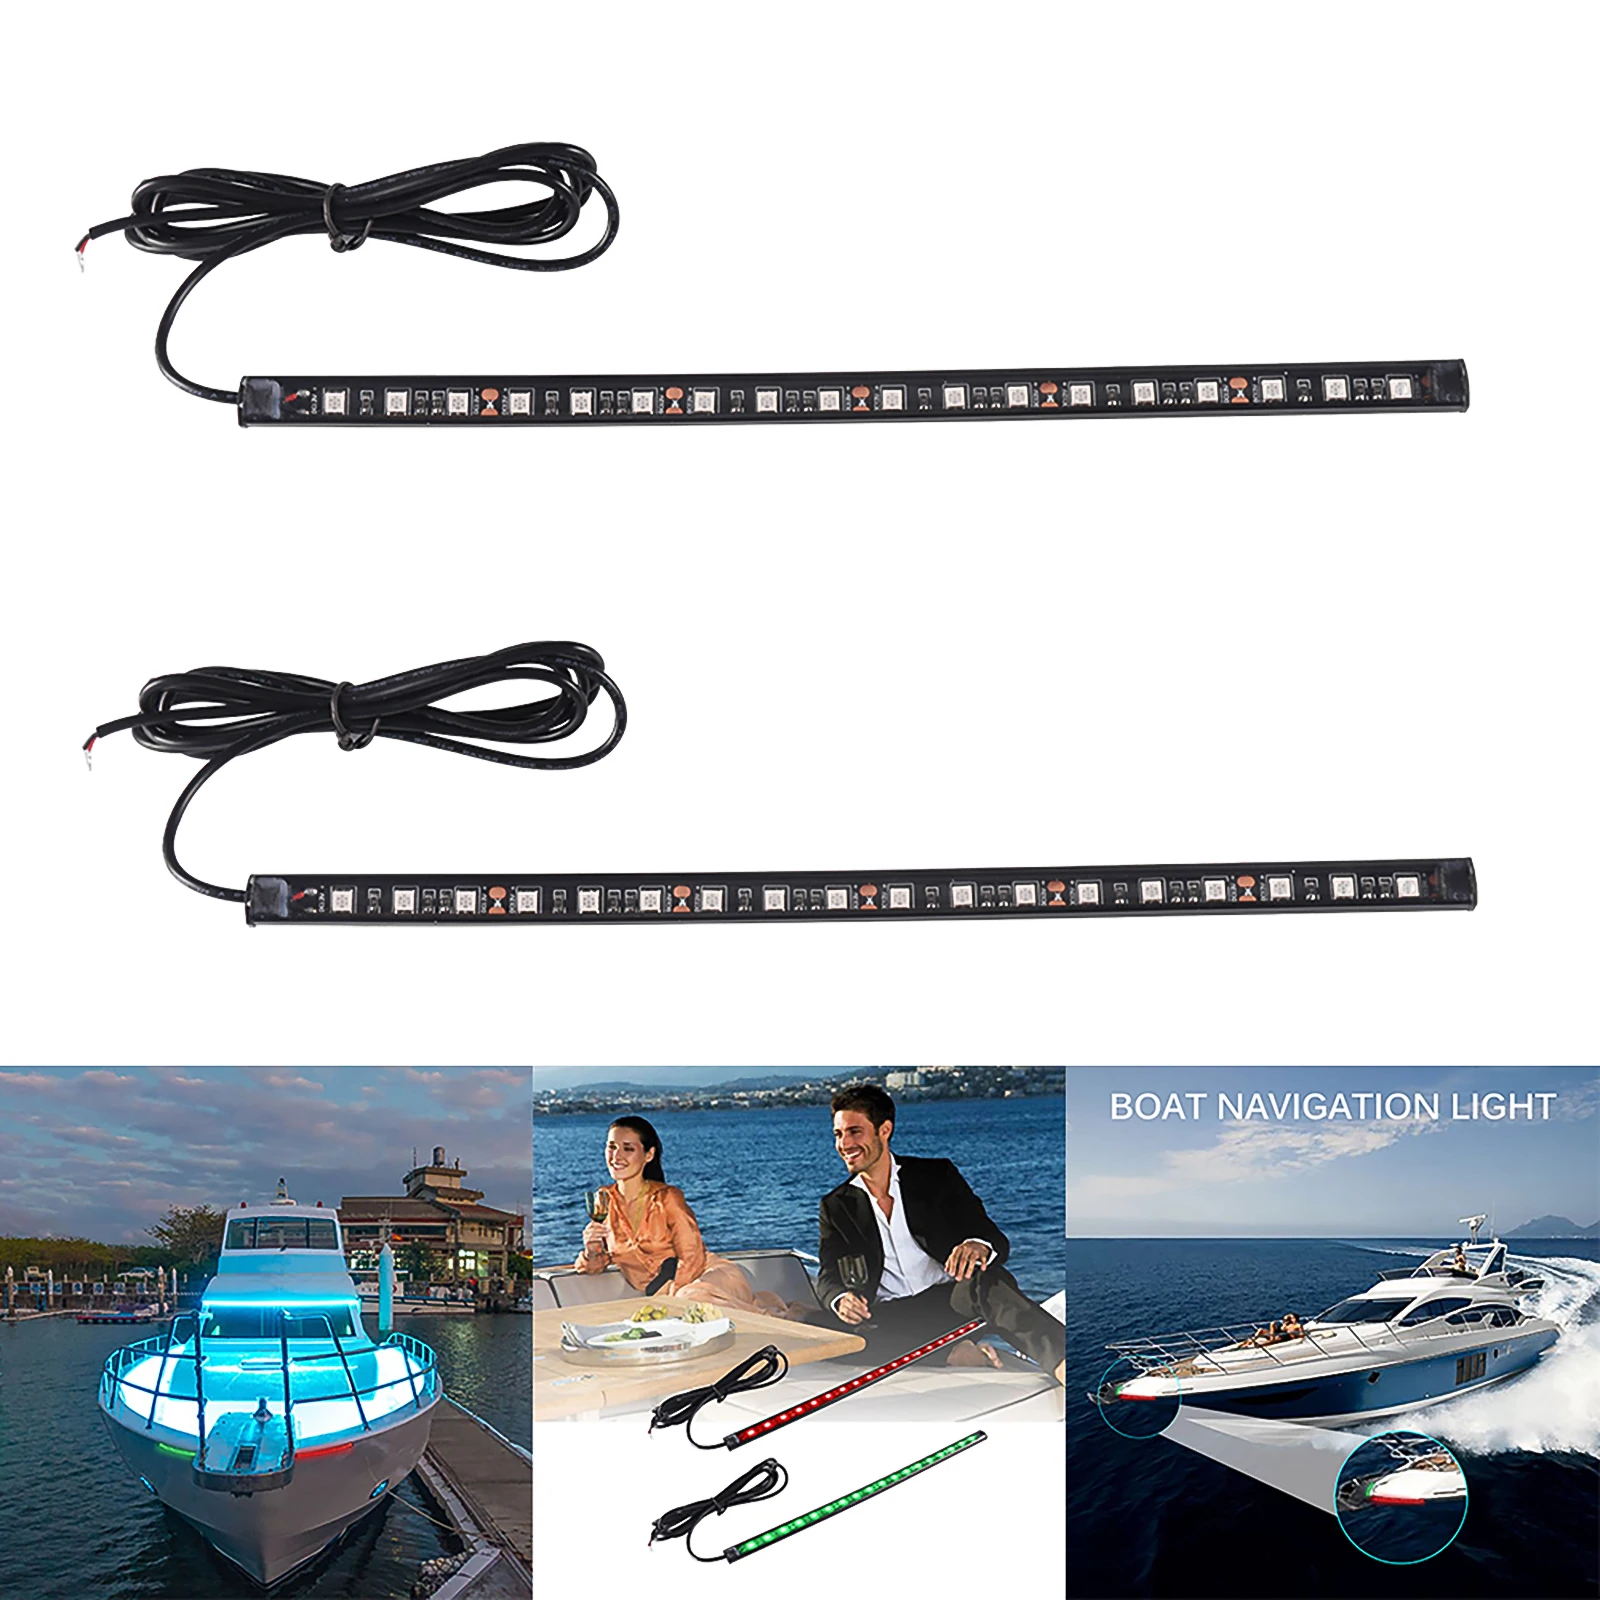 

2 шт. 12 В светодиодная навигационная лампа для лодки, подходит для лодок, понтонов, яхт, подходит для уличных морских навигационных огней s 2021 ...